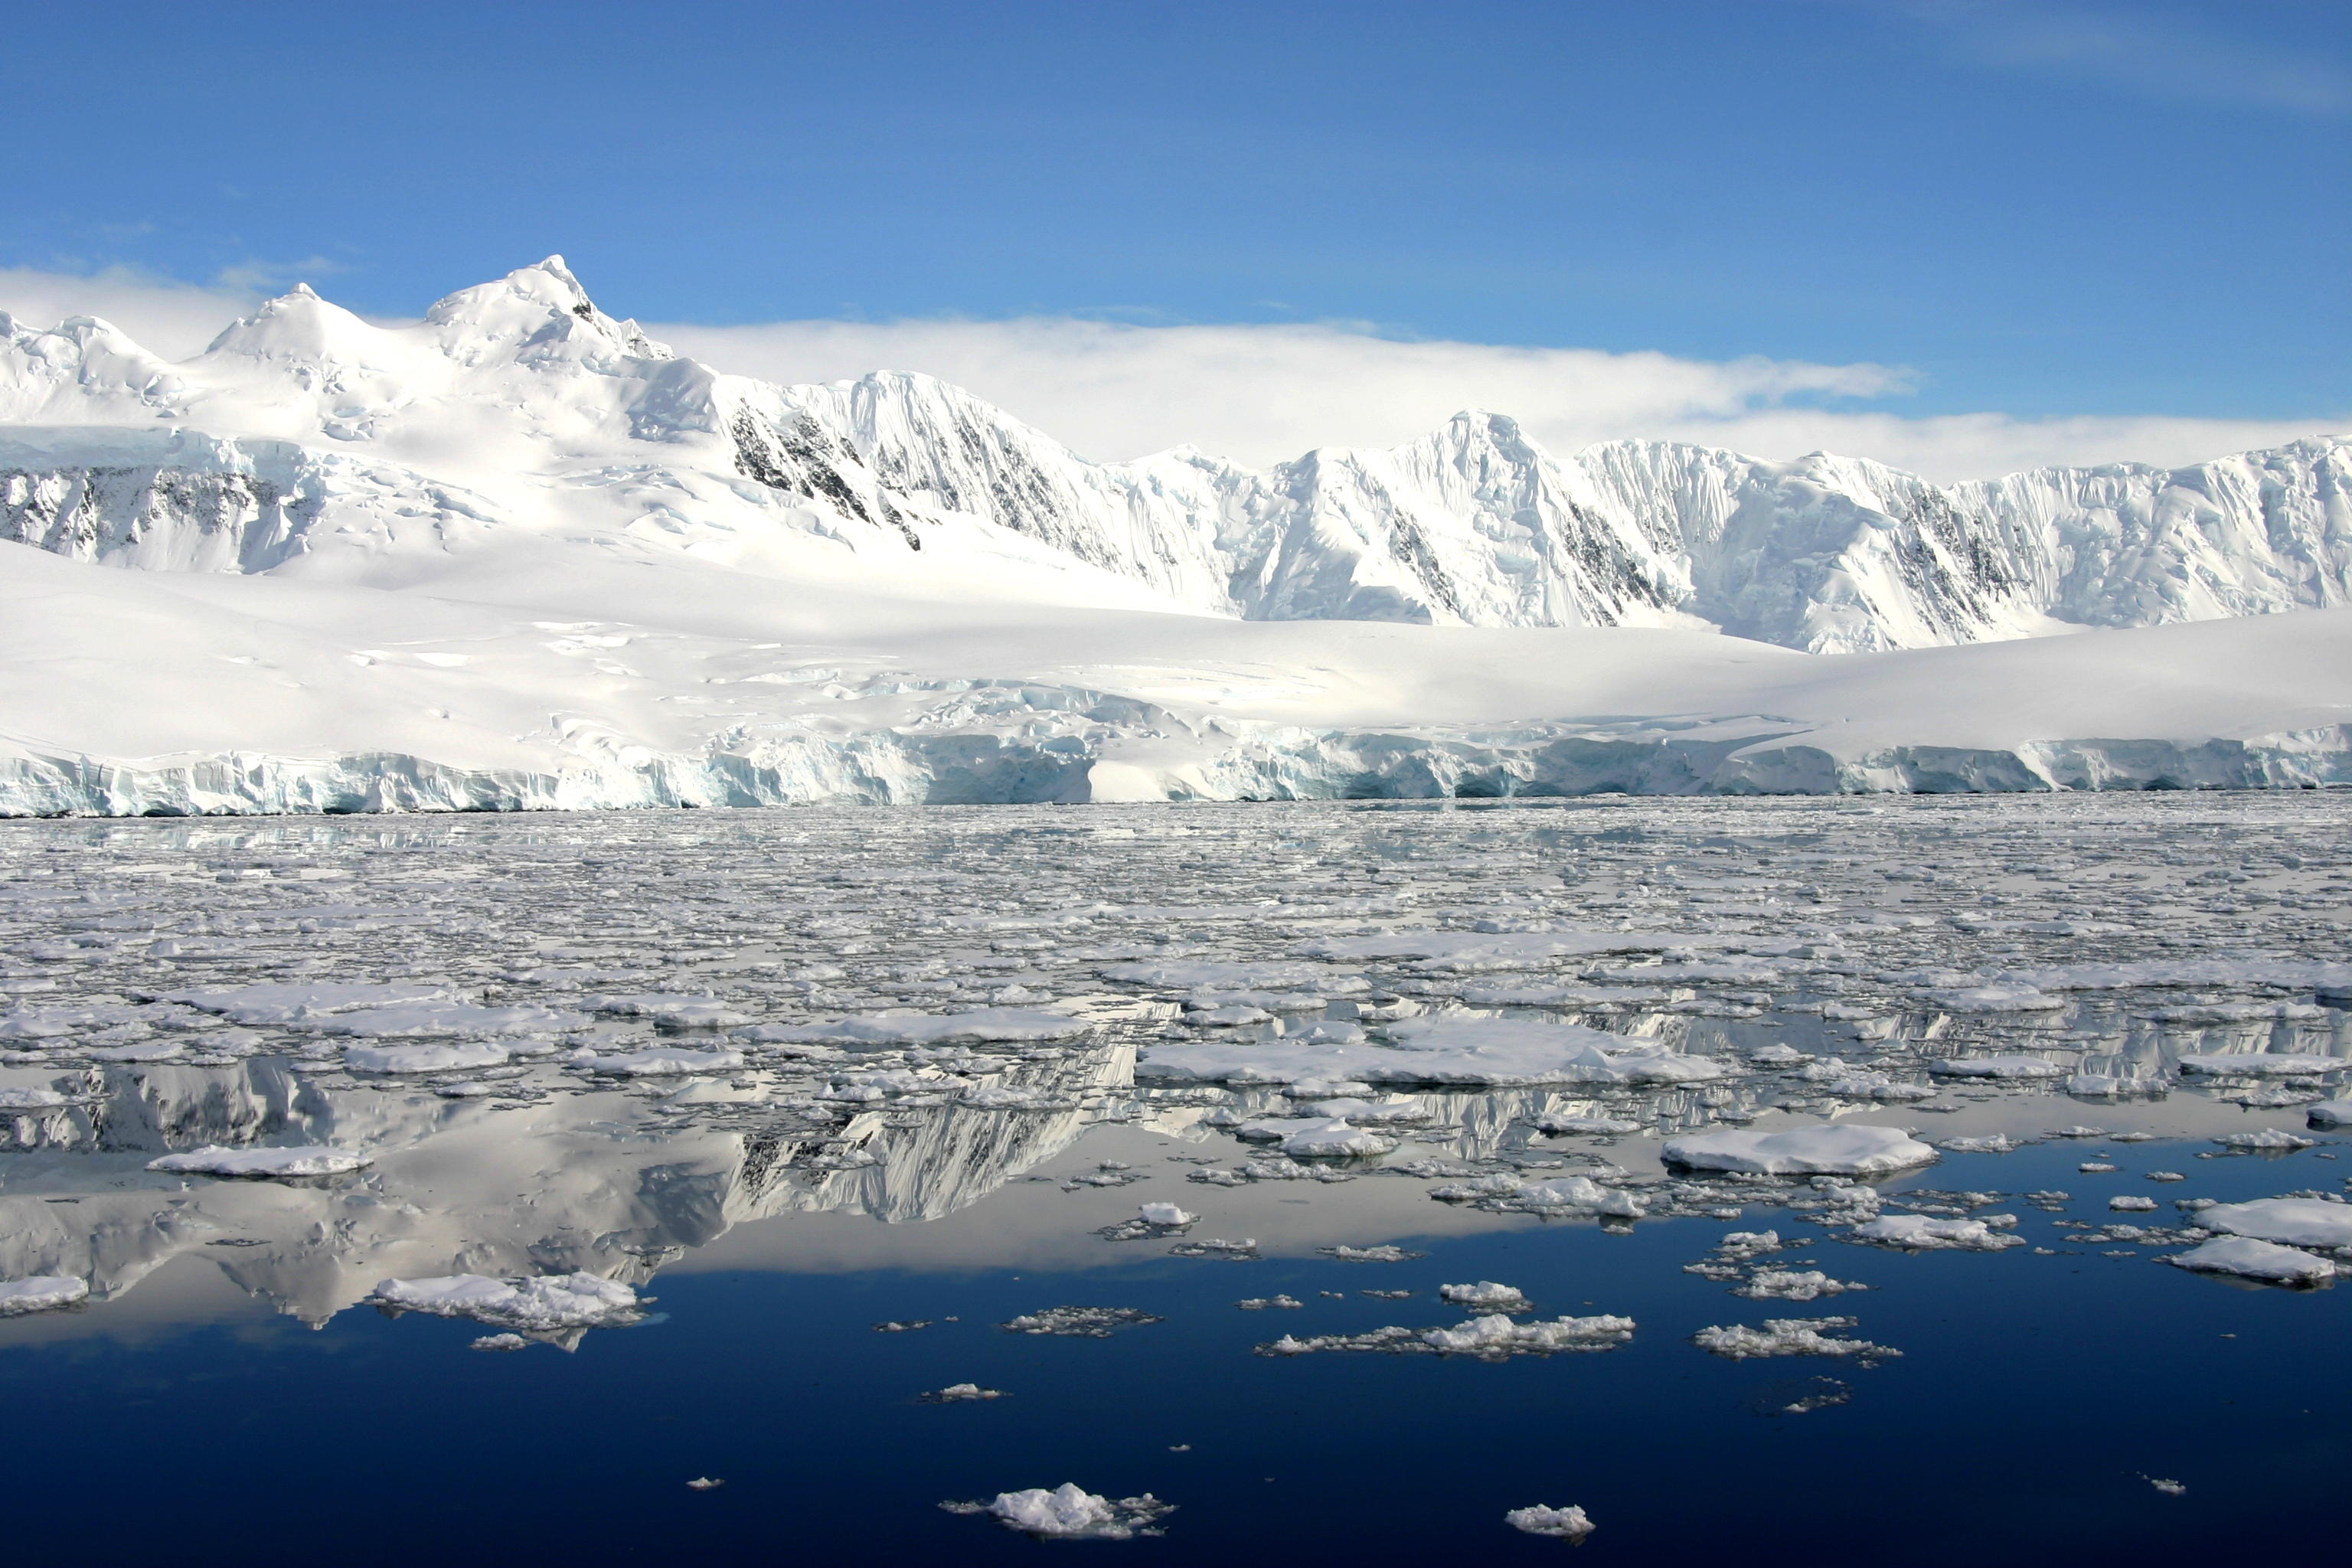 antarctic habitat